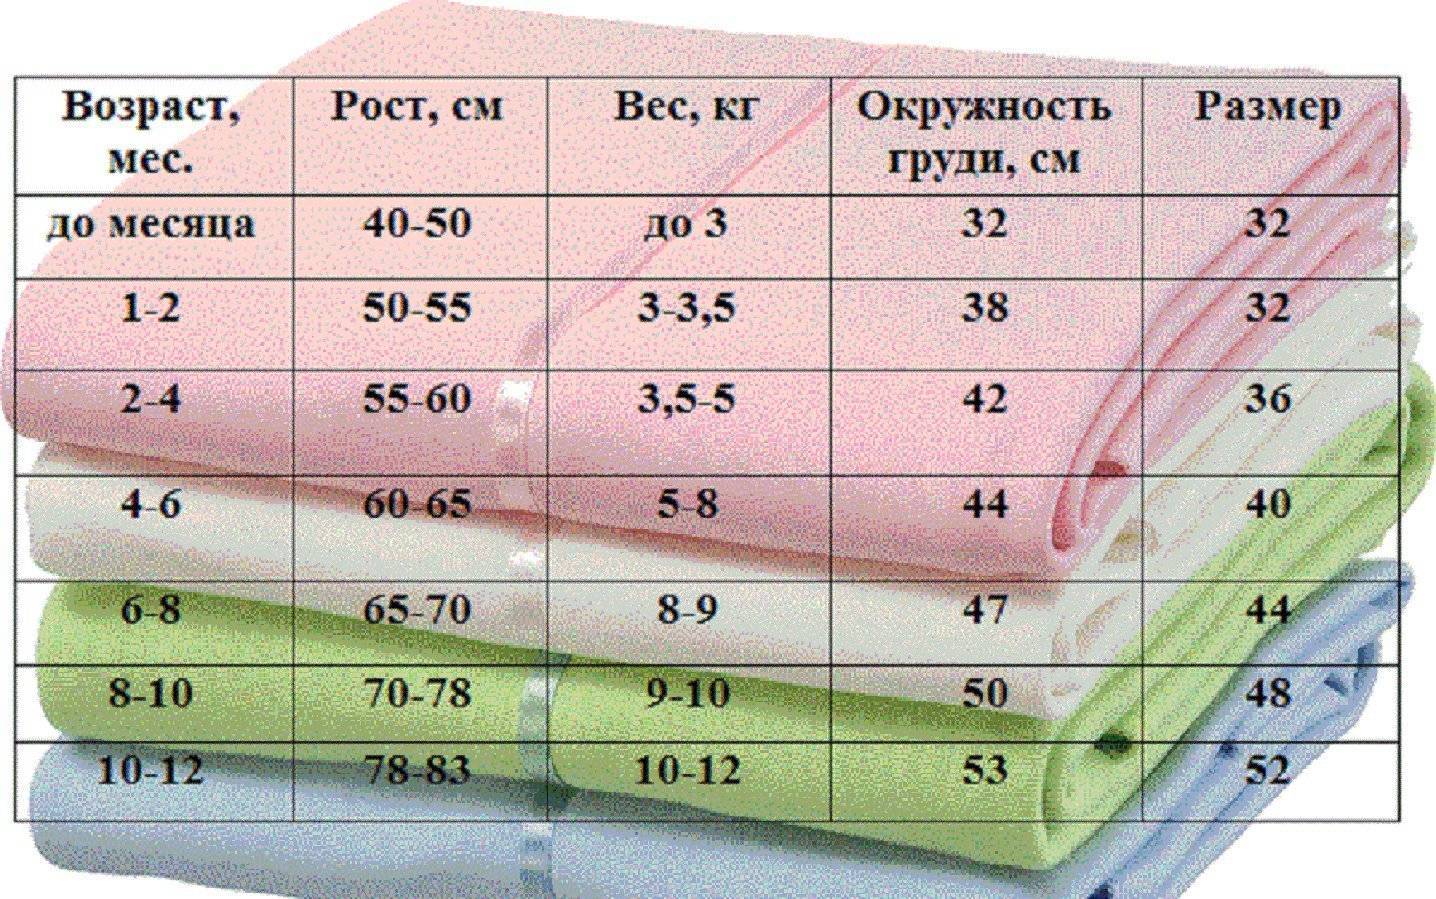 Пеленки для новорожденных: необходимое количество и размеры, выбор материала